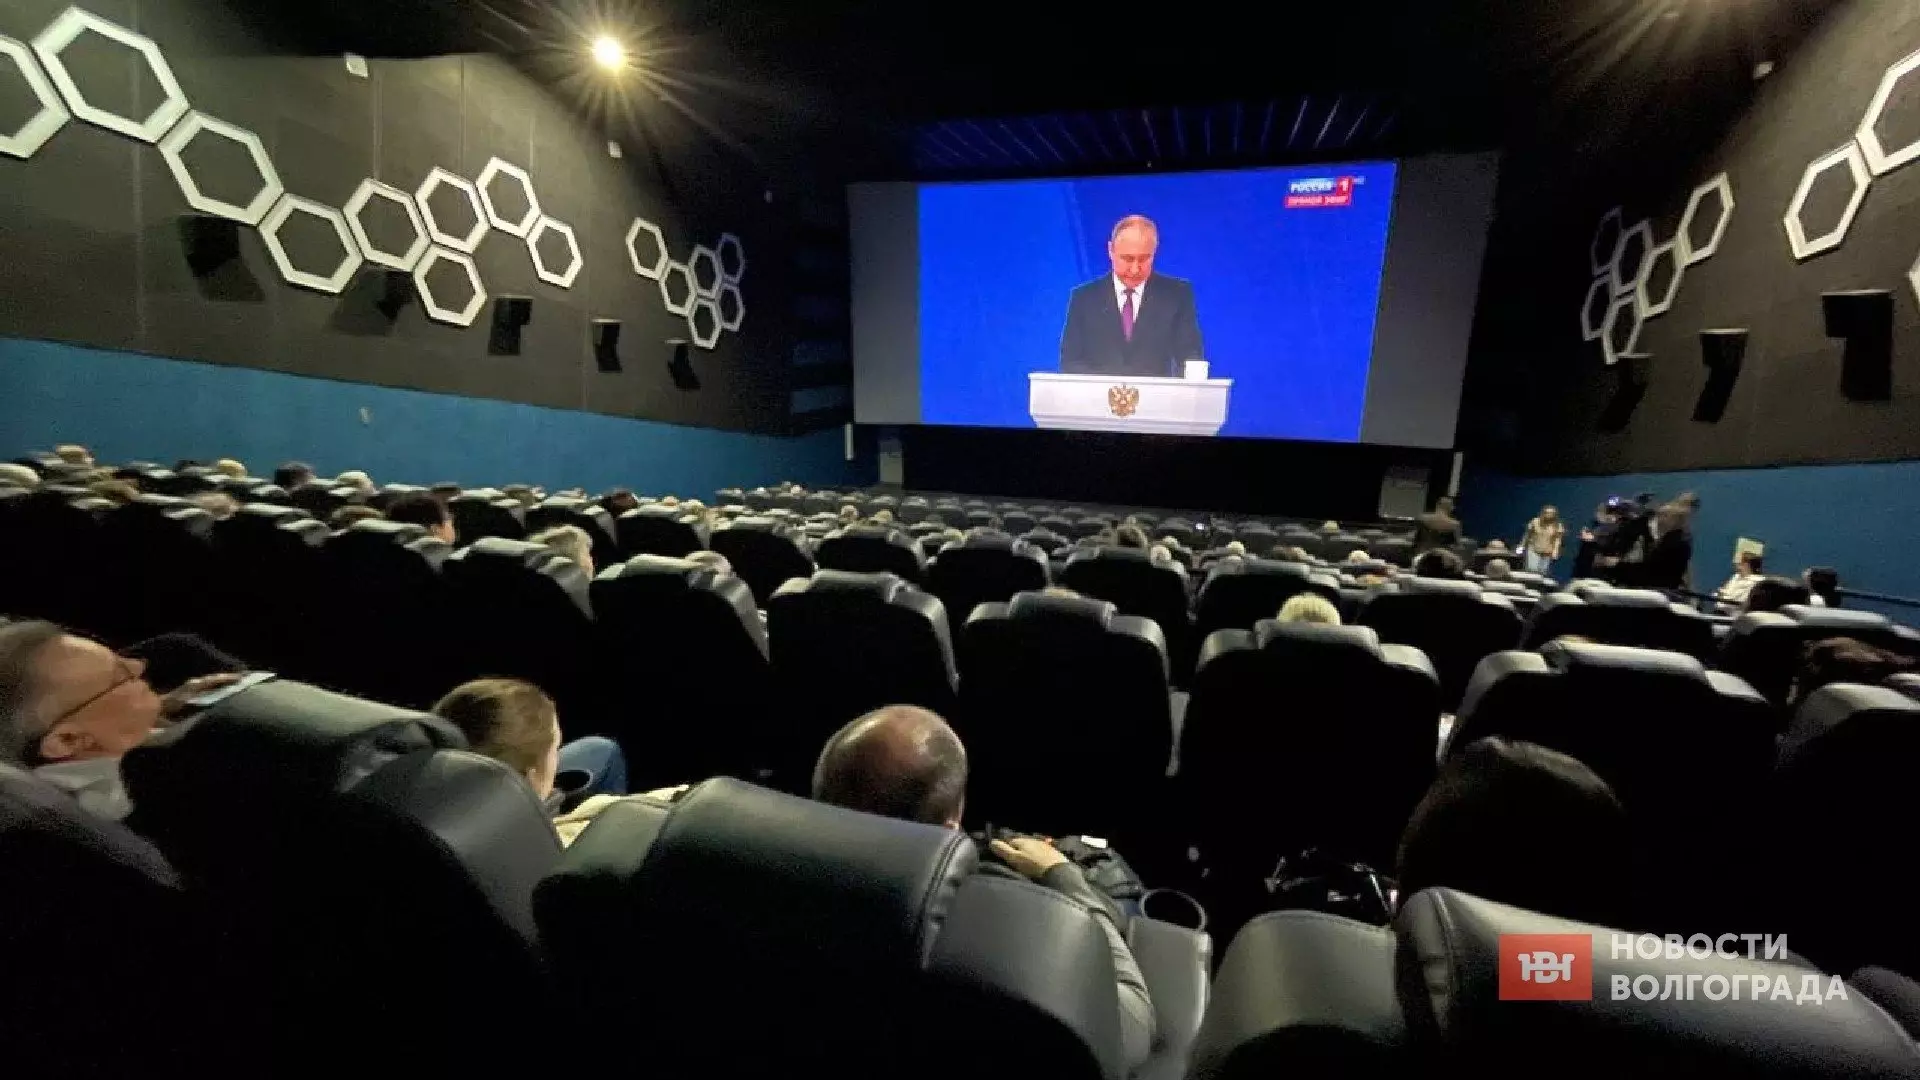 Путина впервые показывают в кинотеатре